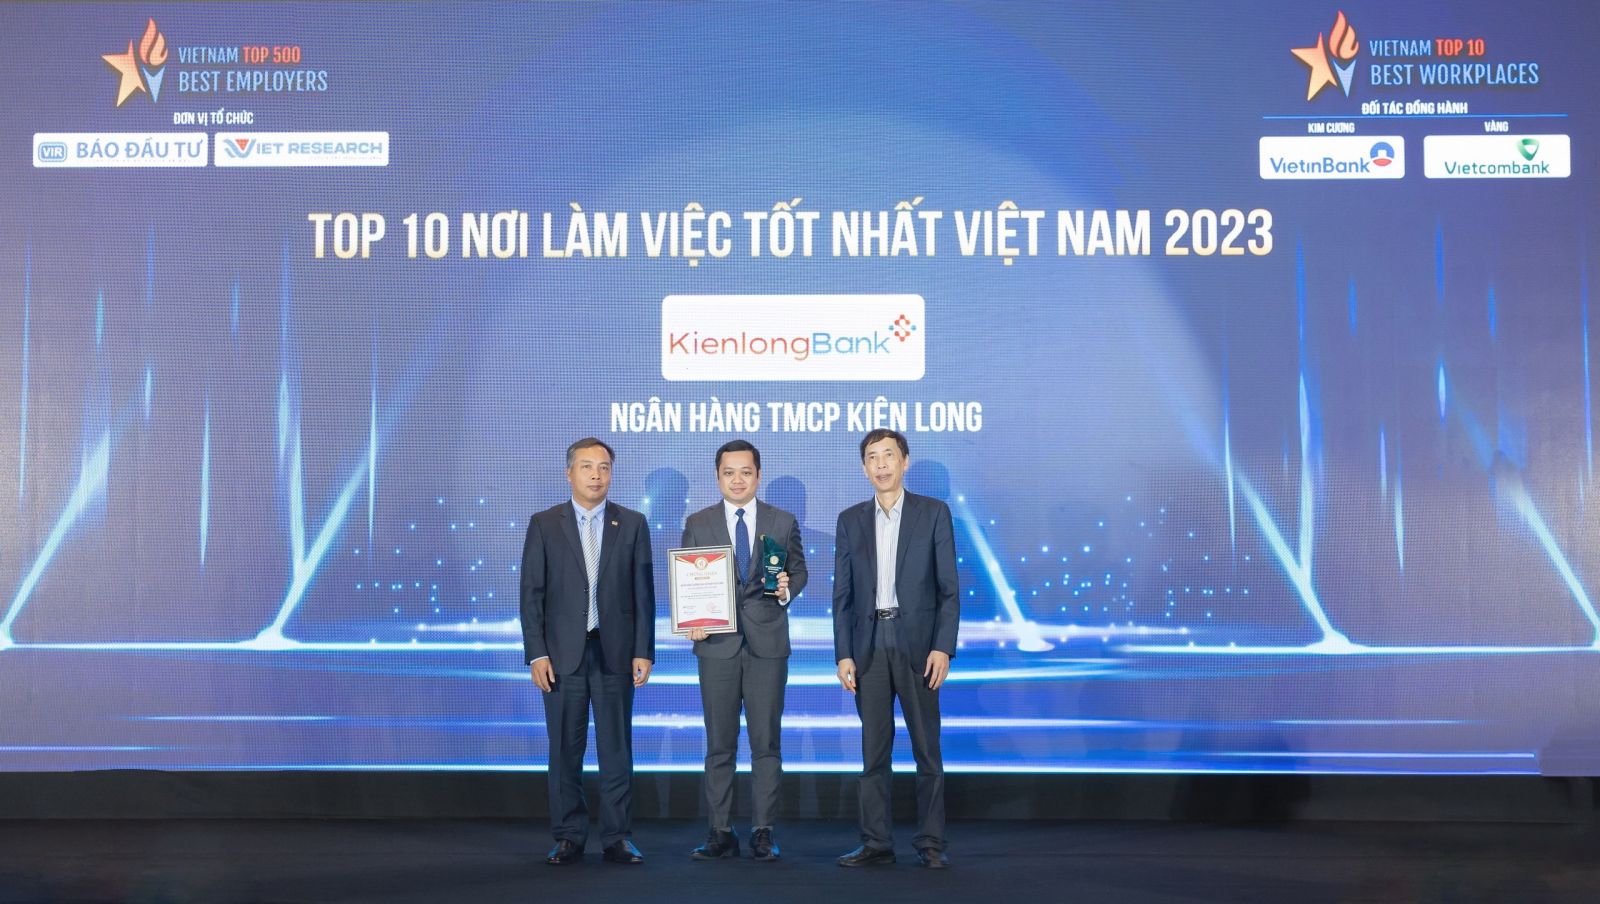 Phó Tổng Giám đốc Trần Hồng Minh vinh dự nhận giải thưởng Top 10 nơi làm việc tốt nhất ngành Ngân hàng của KienlongBank